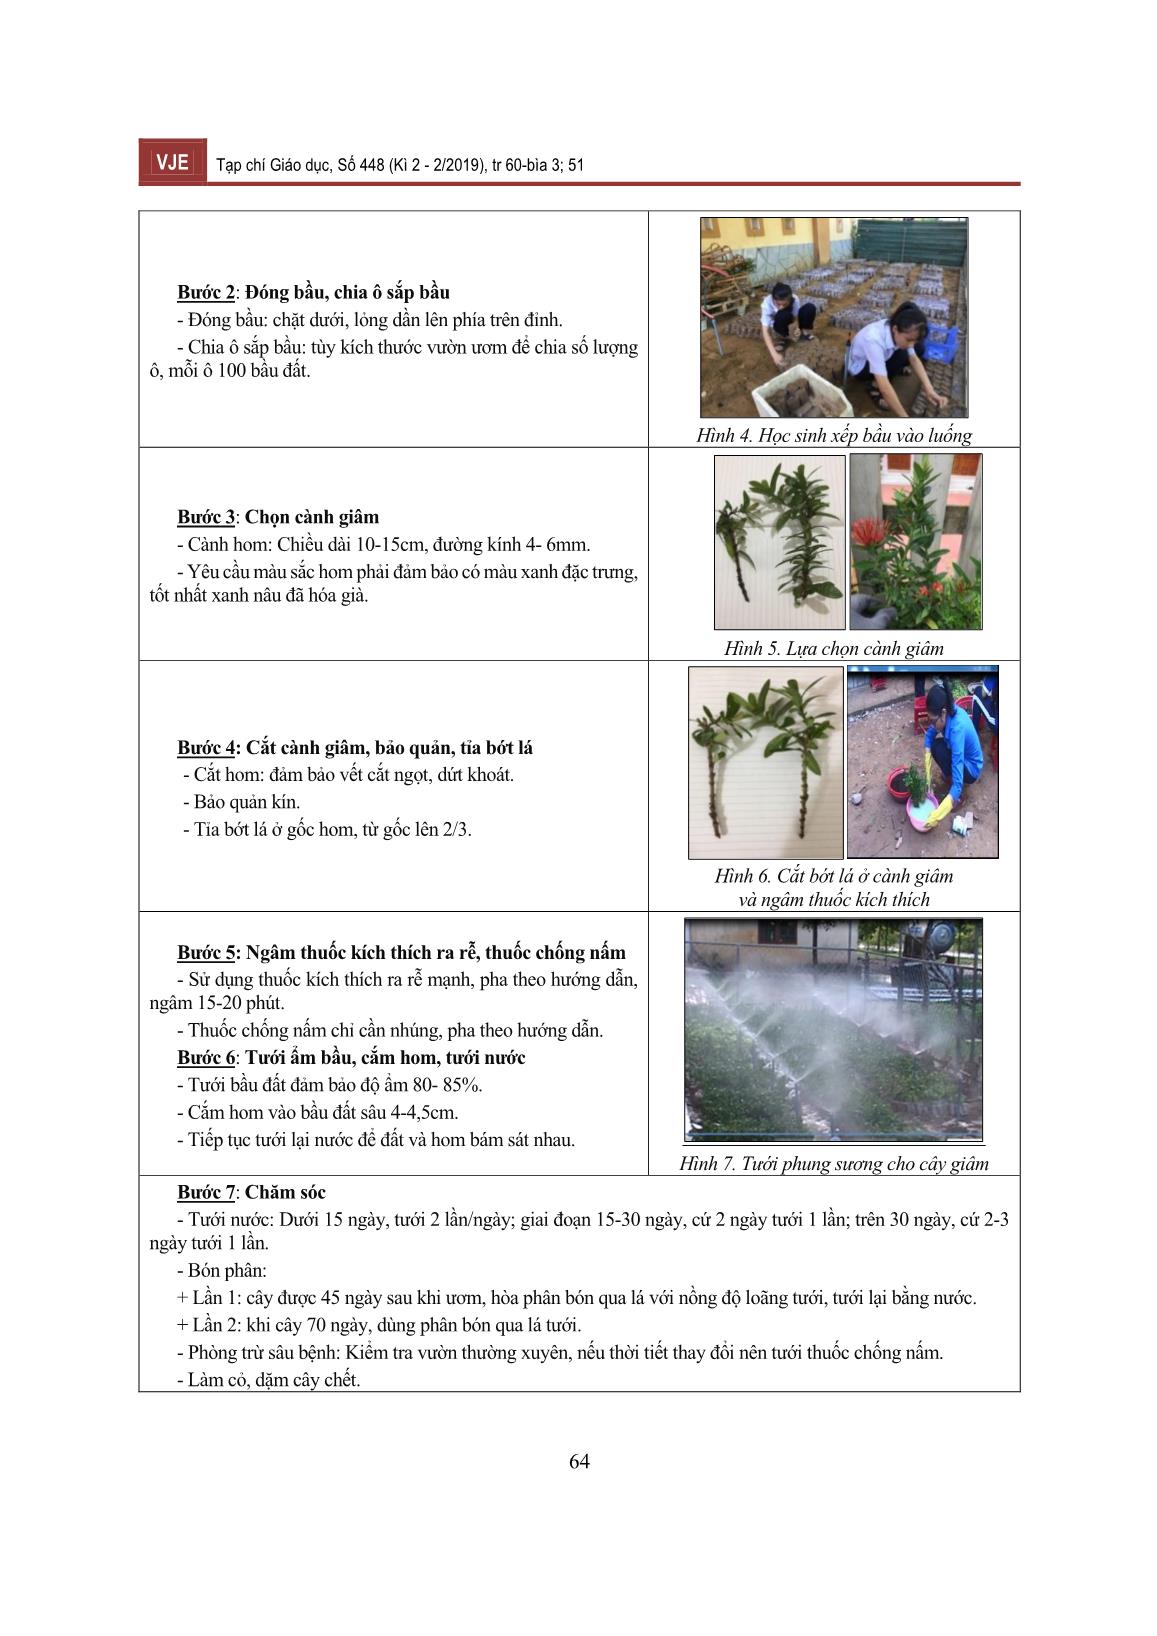 Vườn thực nghiệm - Mô hình trải nghiệm hướng nghiệp trong dạy học môn sinh học, công nghệ nông nghiệp nội dung giáo dục địa phương tỉnh Quảng Trị trang 5